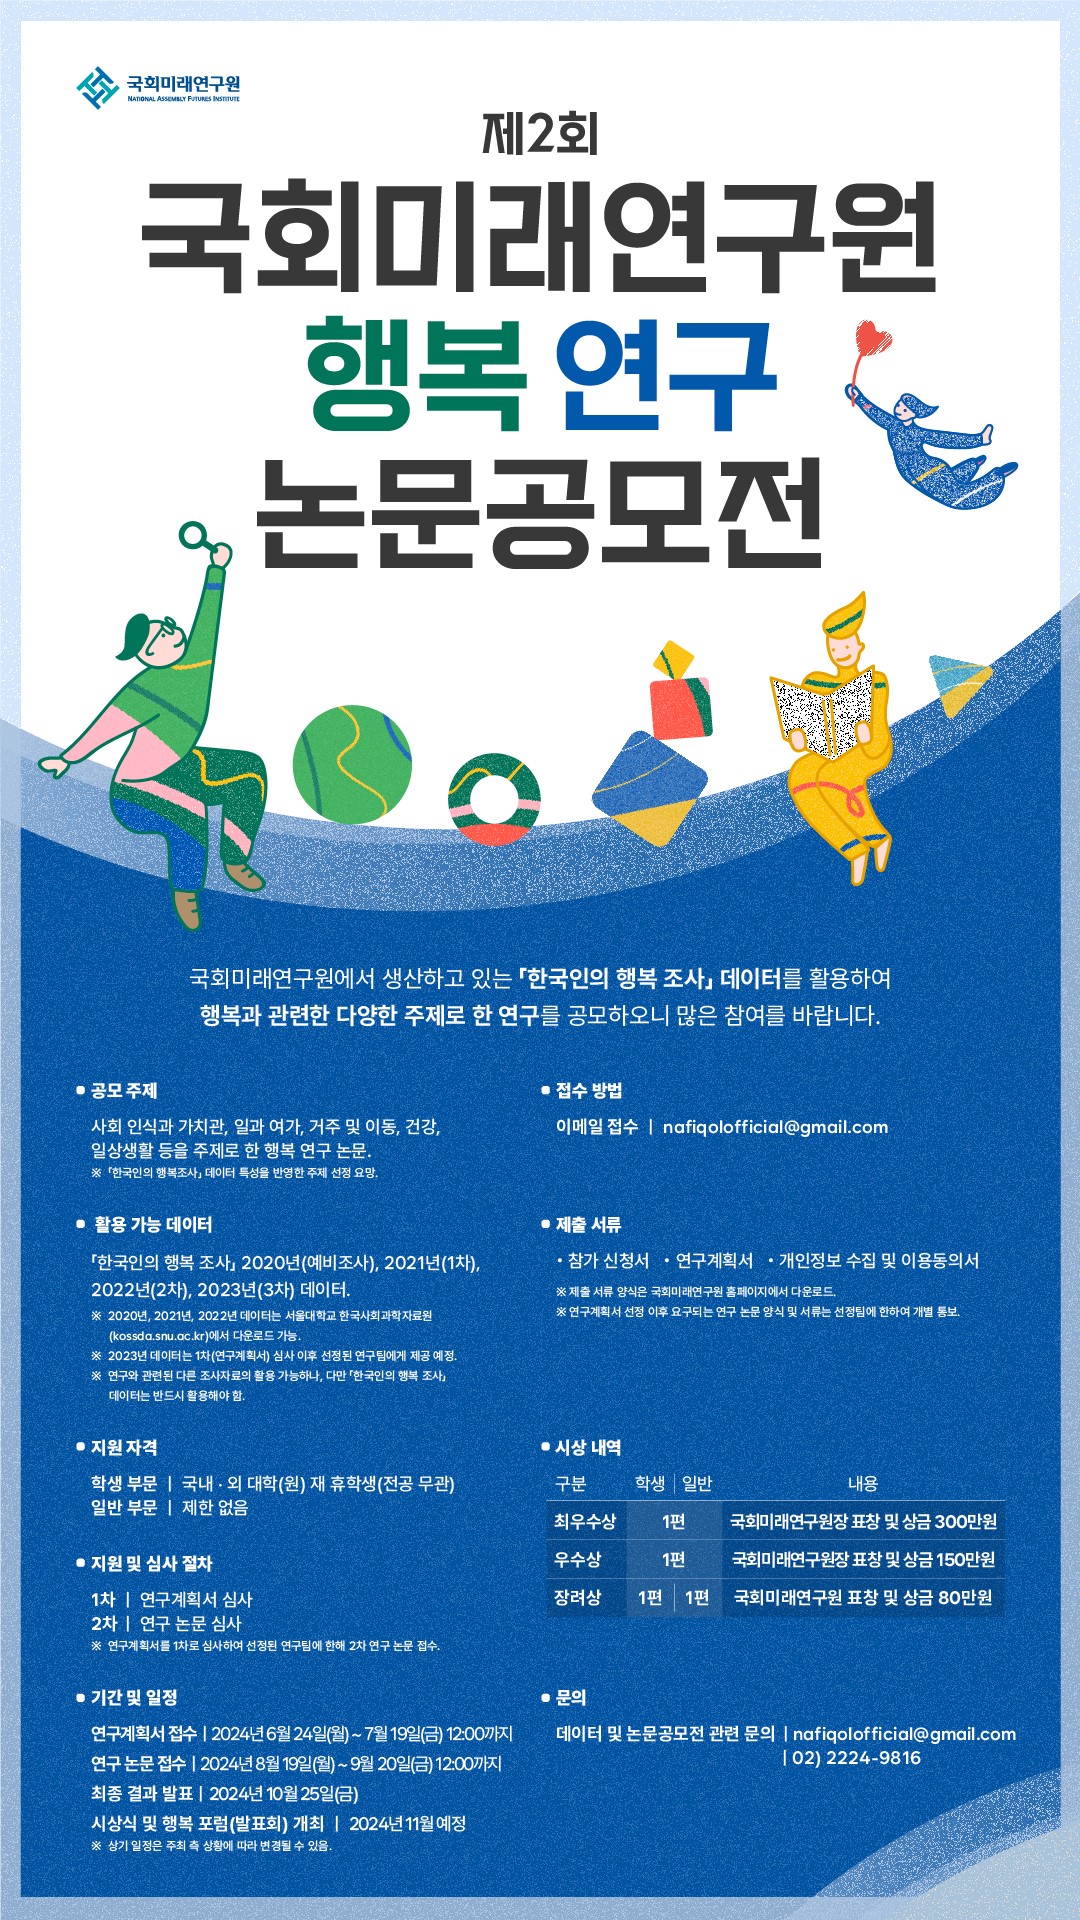 제2회 행복연구 논문공모전
~2024.07.19(금)
